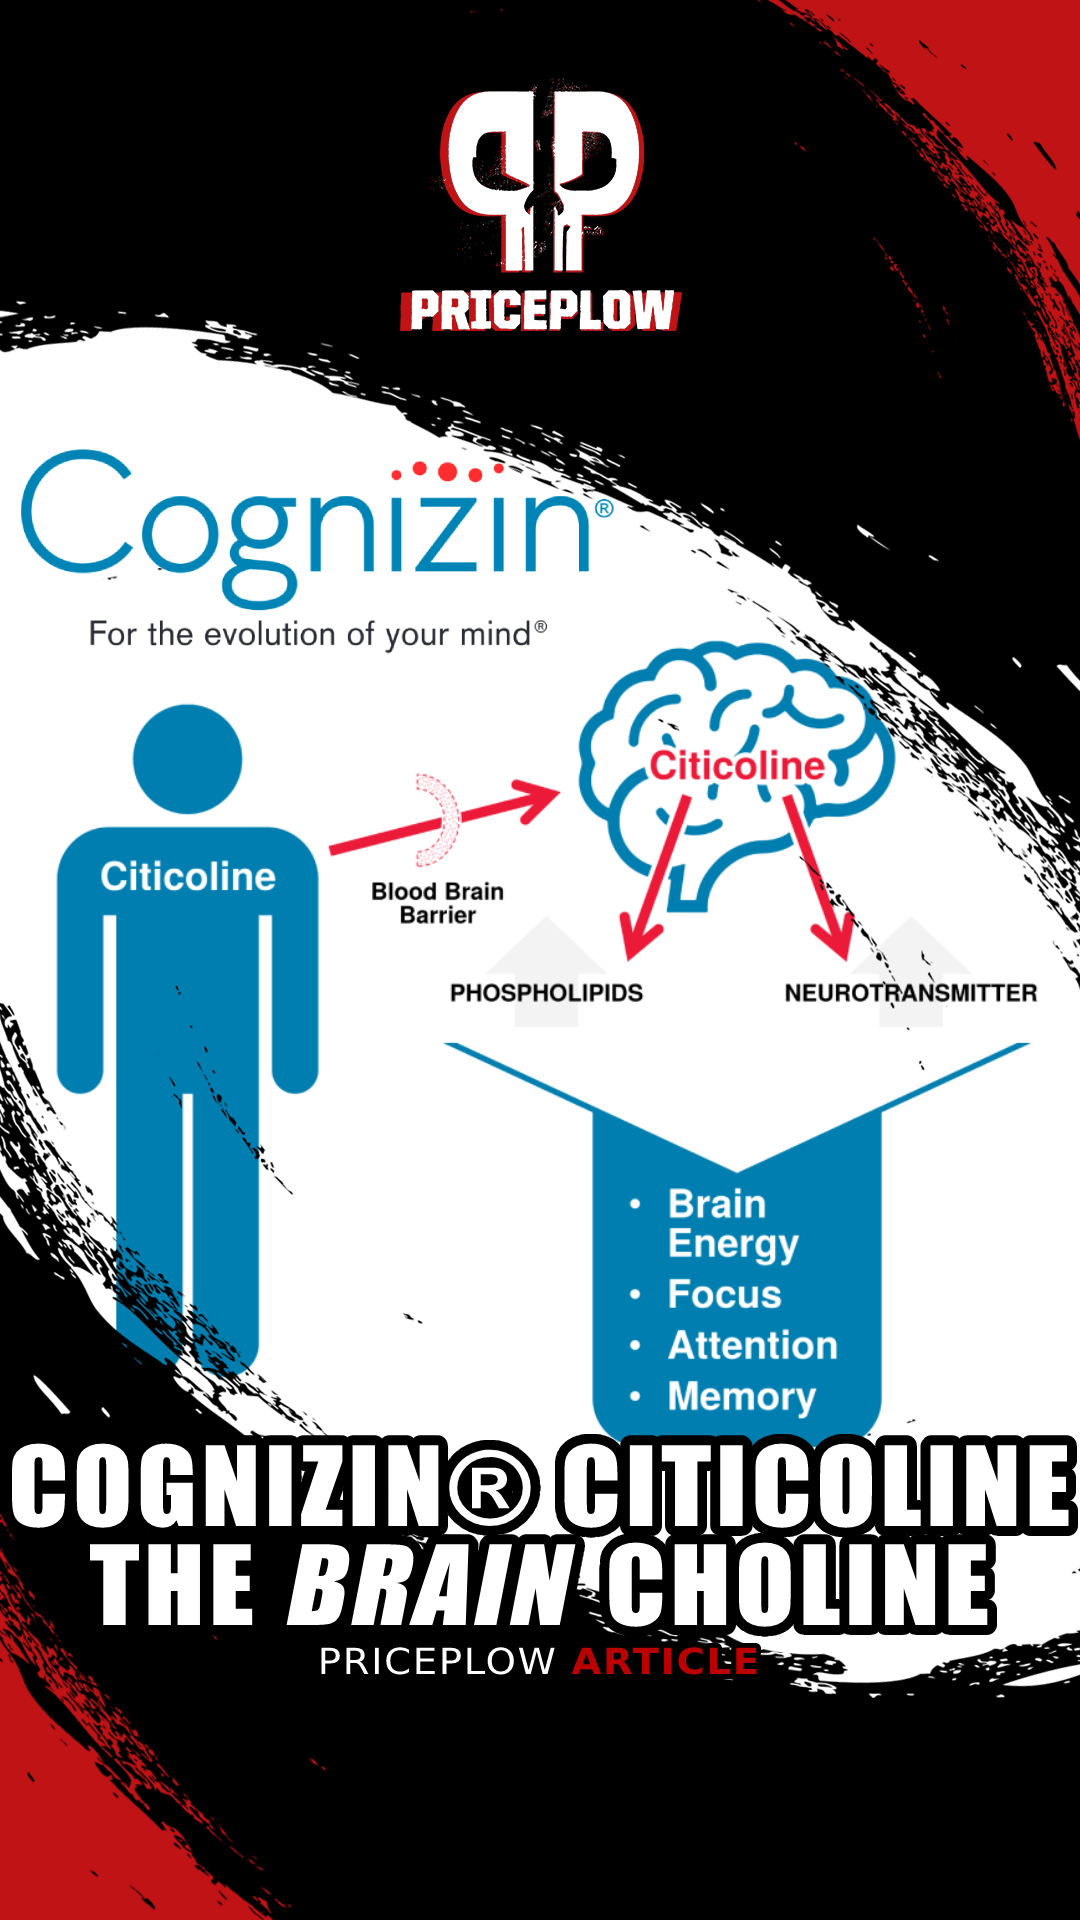 Cognizin Citicoline: The Brain Choline